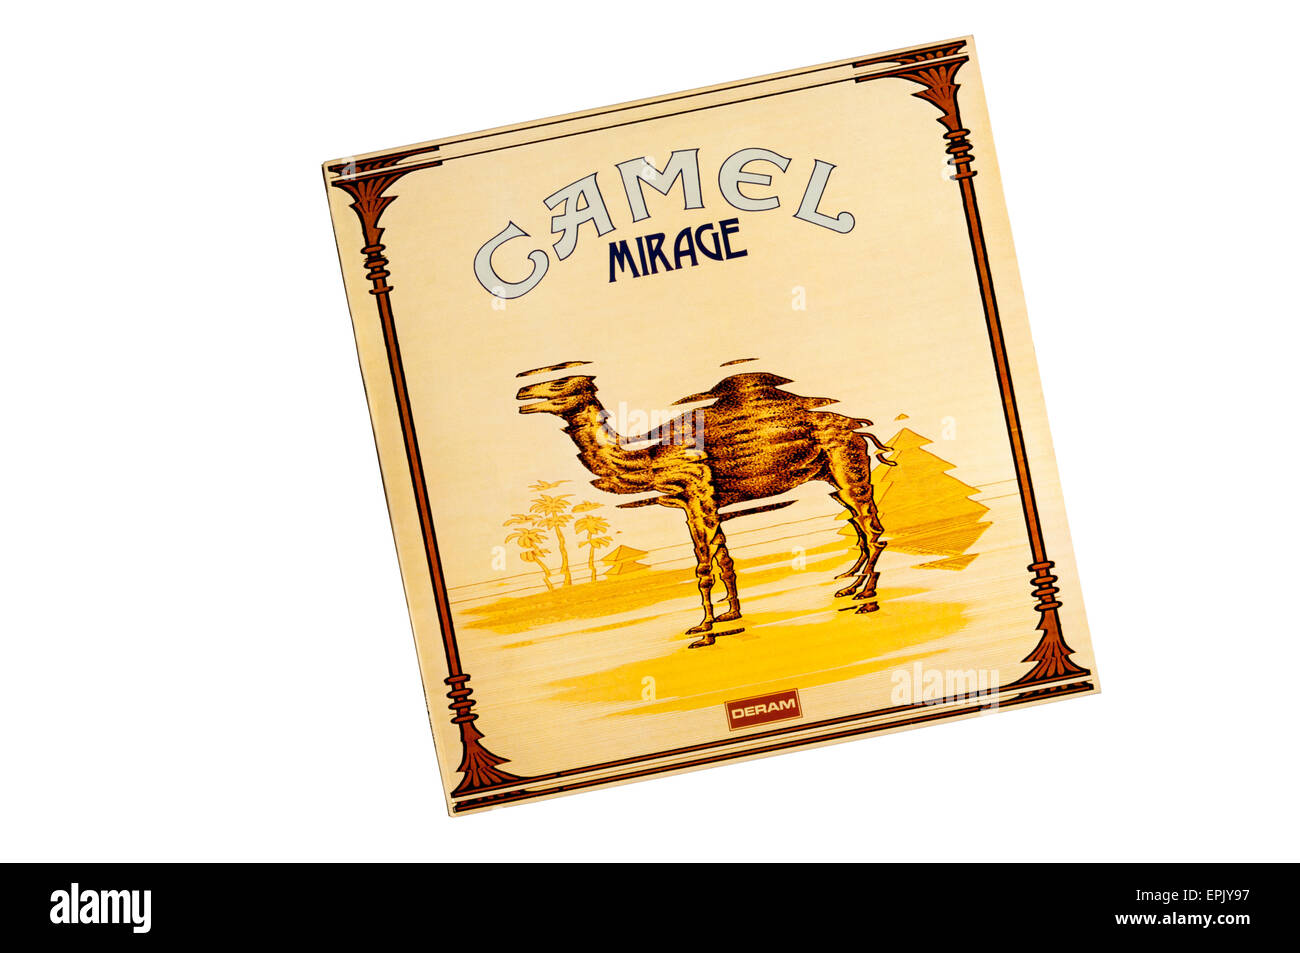 Mirage era il cammello del secondo album, uscito nel 1974. Foto Stock